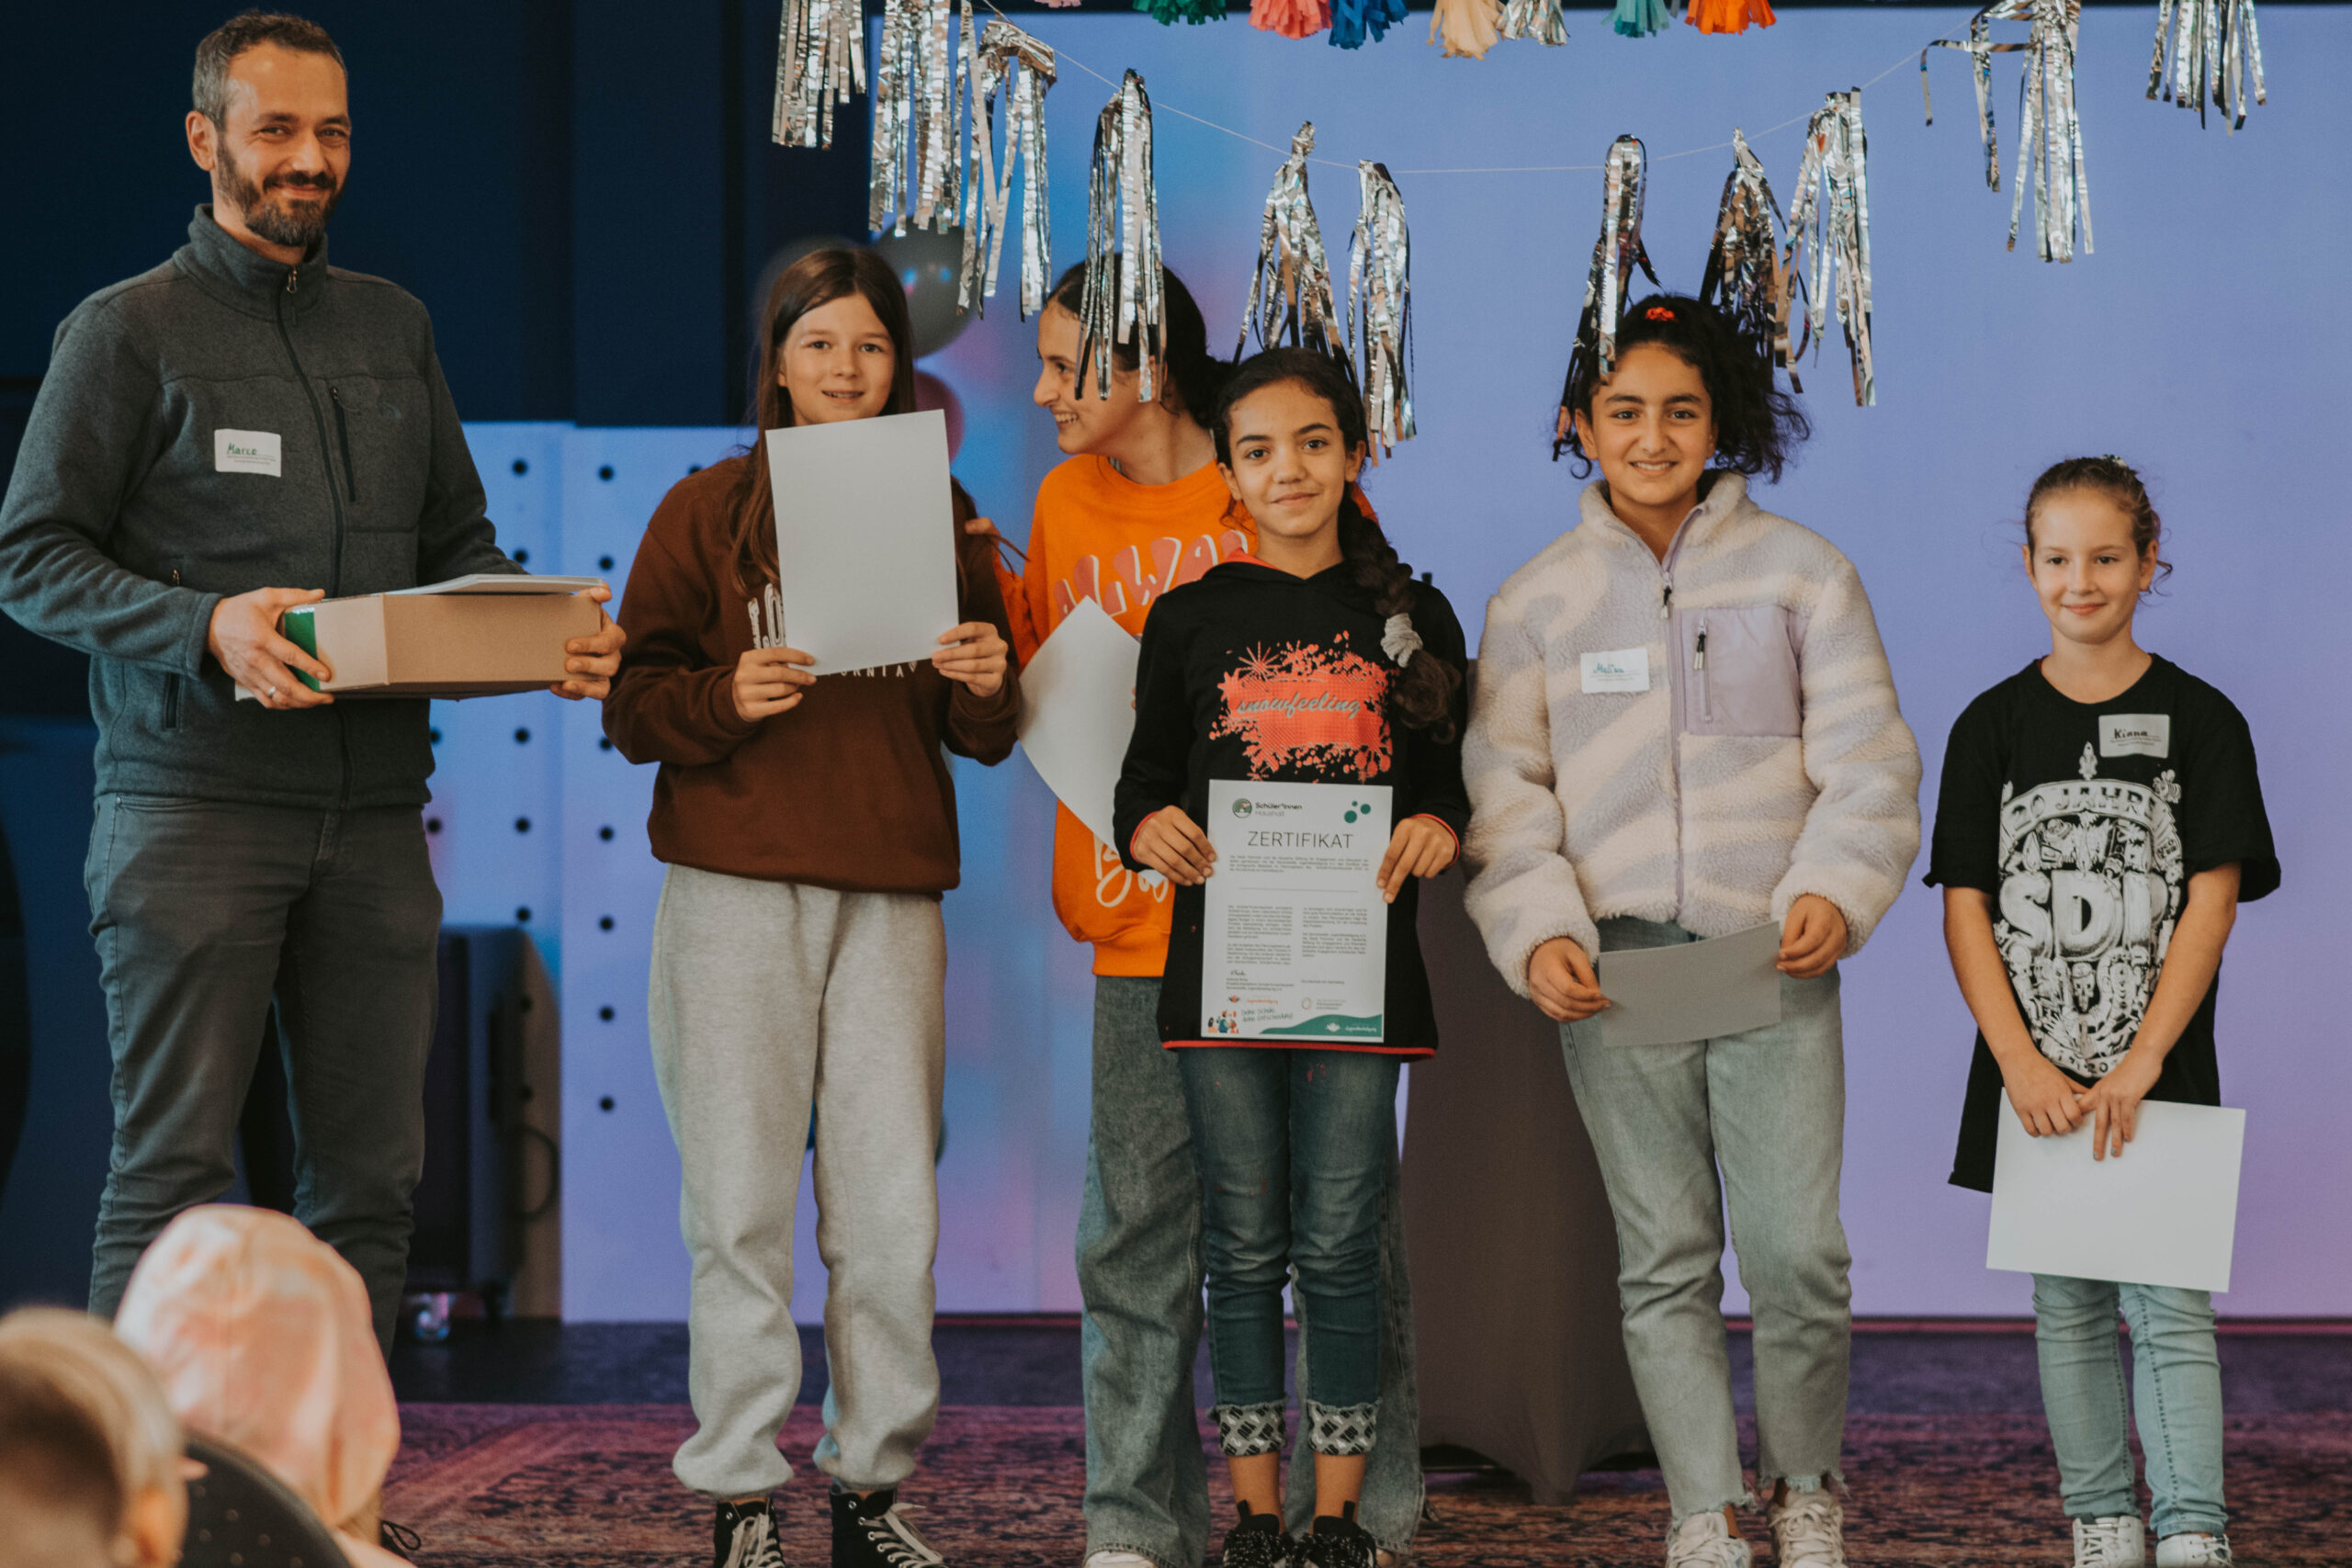 Das Bild zeigt Kinder und eine erwachsene Begleitperson, die auf einer Bühne Zertifikate überreicht bekommen ©Servicestelle Jugendbeteiligung 2022